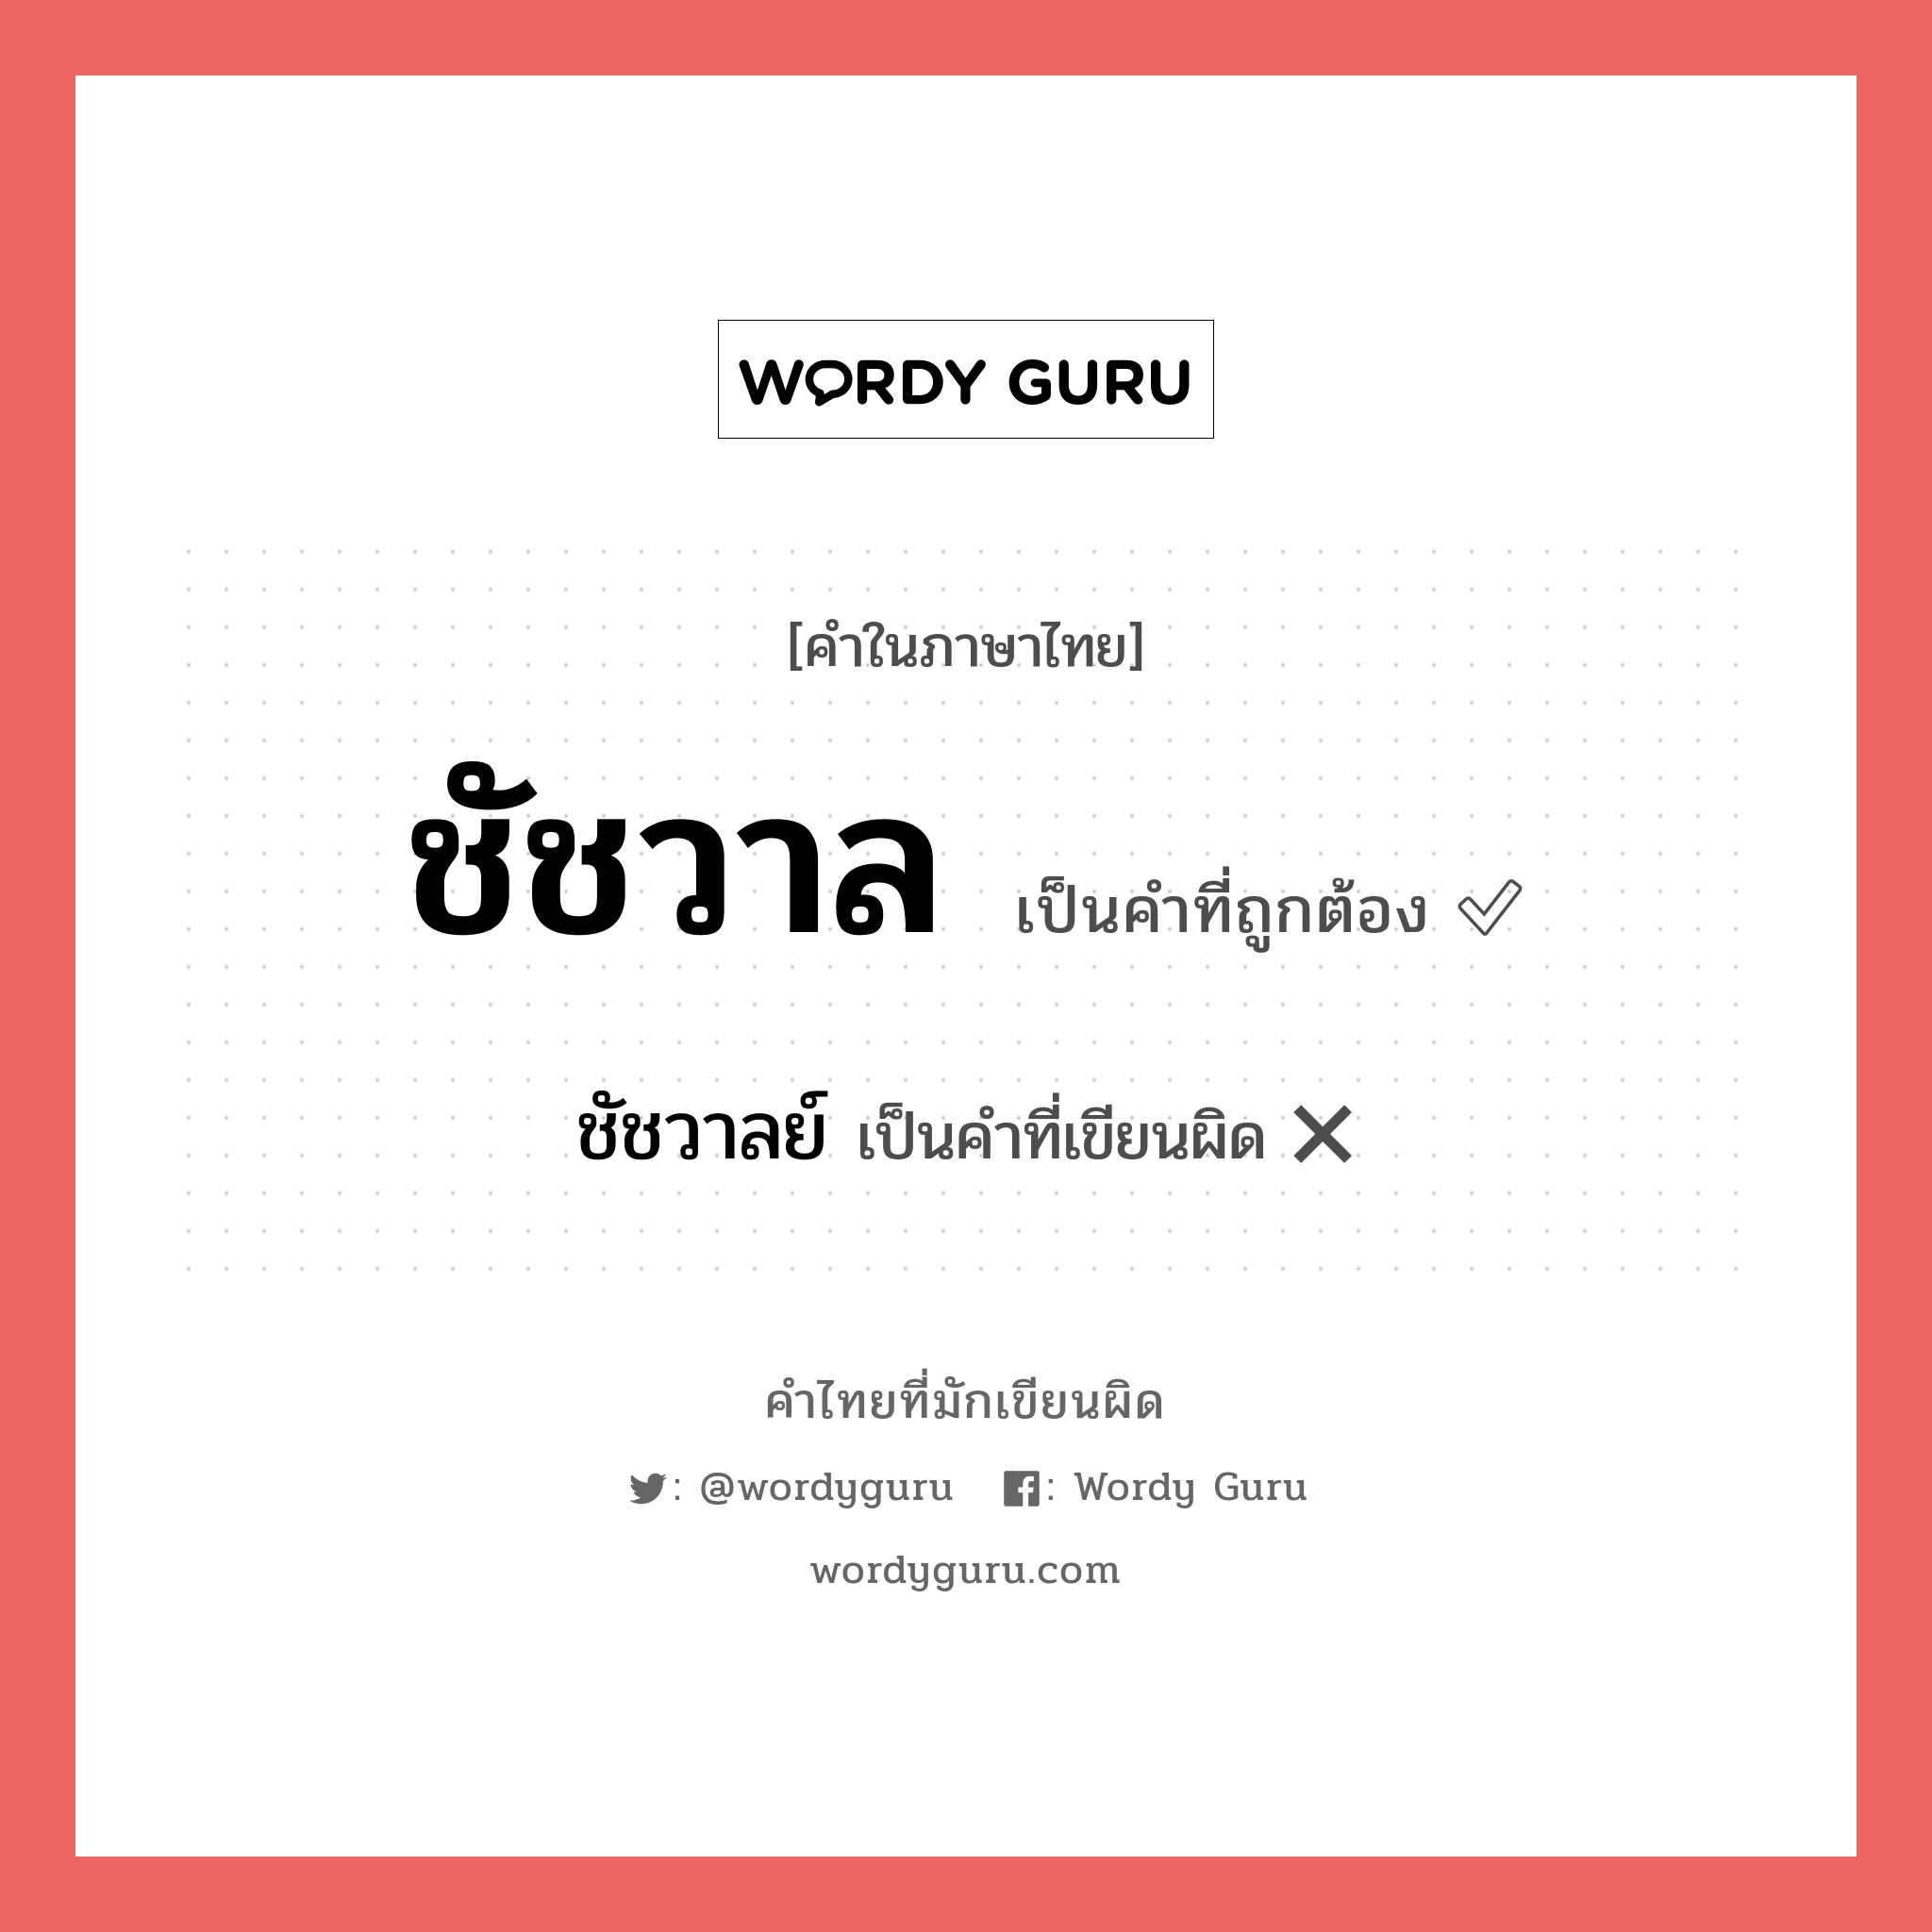 ชัชวาล หรือ ชัชวาลย์ คำไหนเขียนถูก?, คำในภาษาไทยที่มักเขียนผิด ชัชวาล คำที่ผิด ❌ ชัชวาลย์